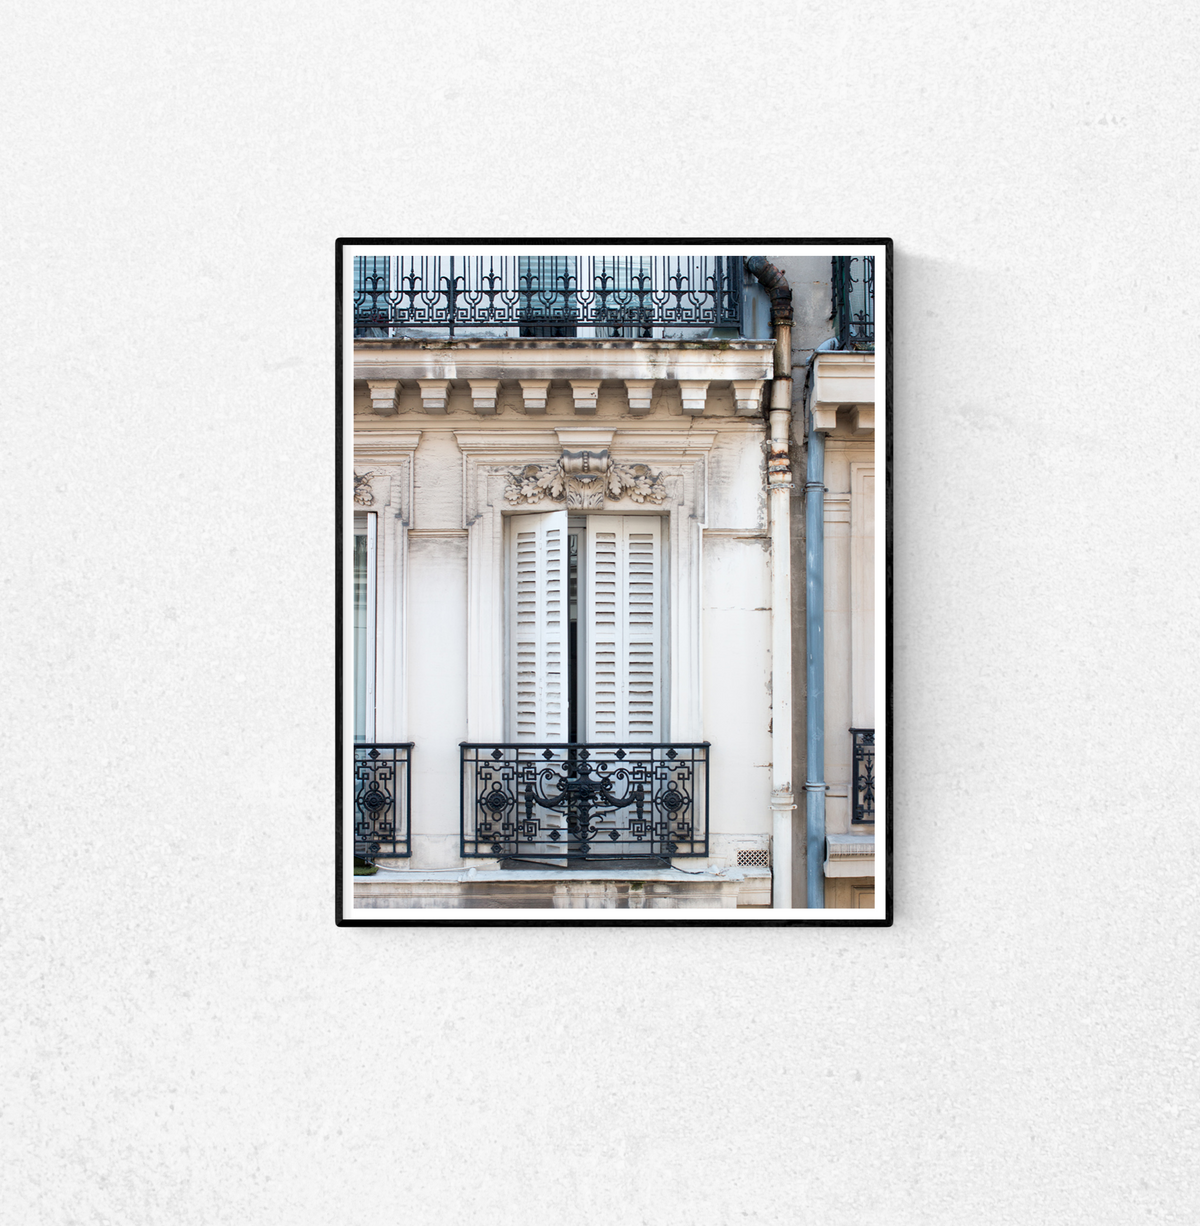 Parisian Window View - Every Day Paris 